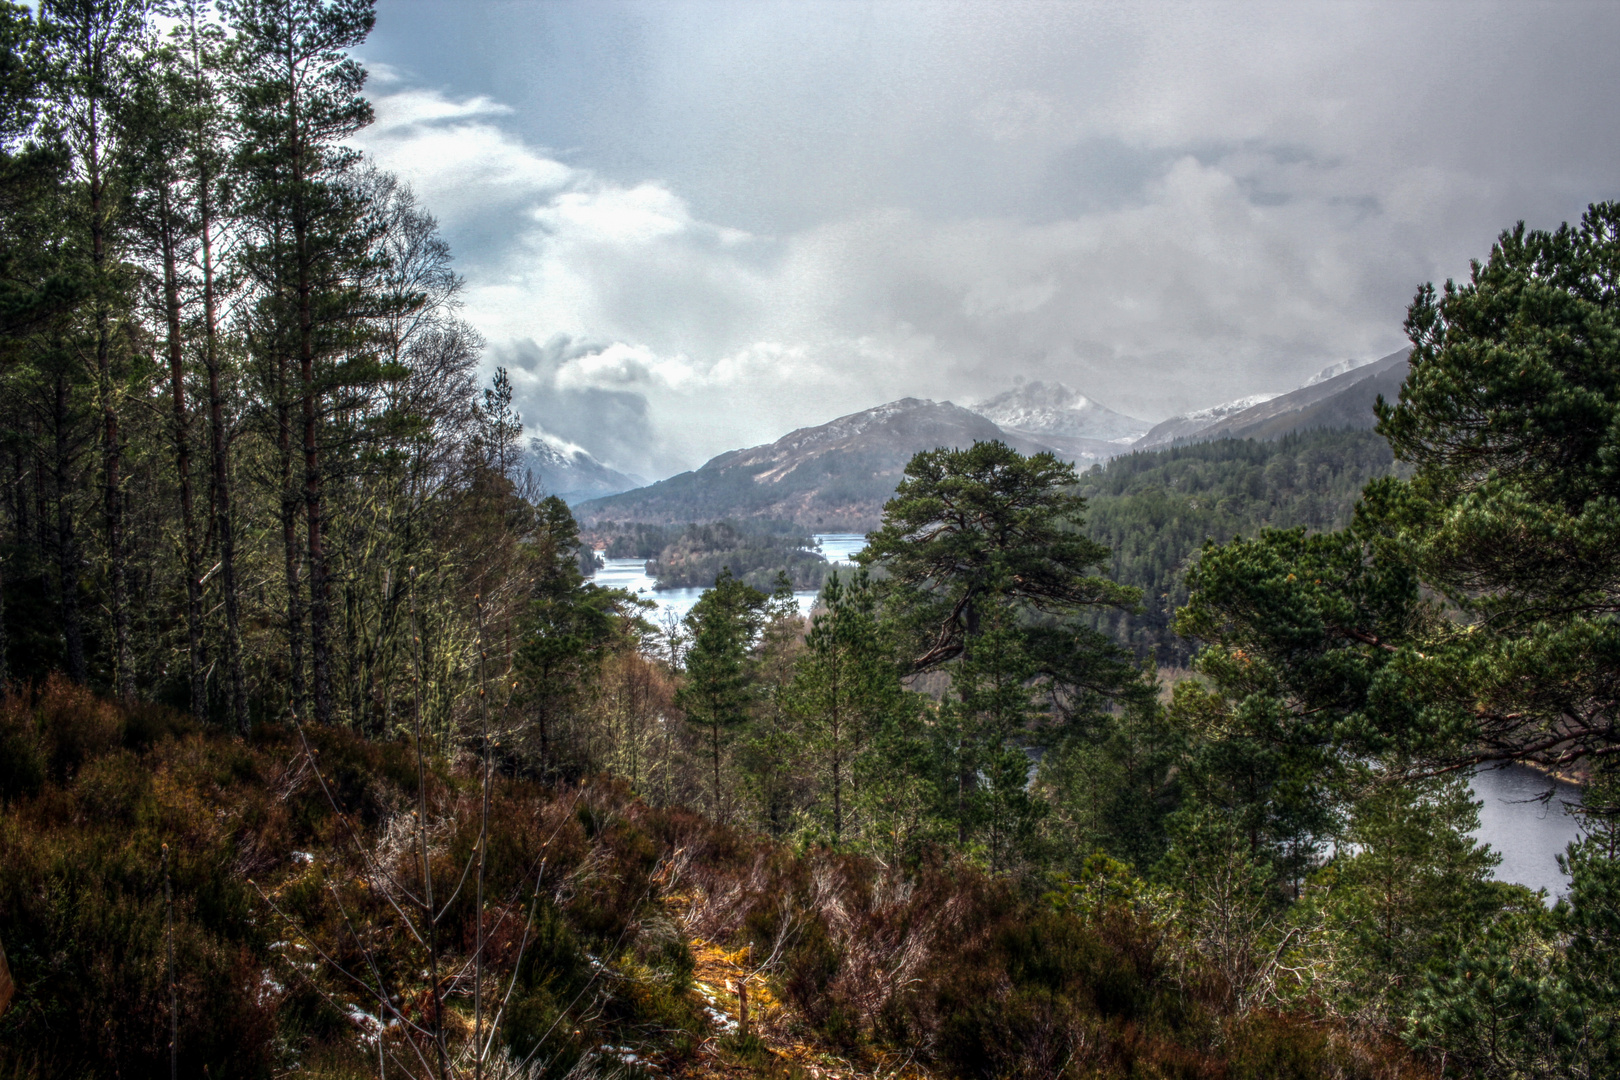 Glen Affric - remnant of winter